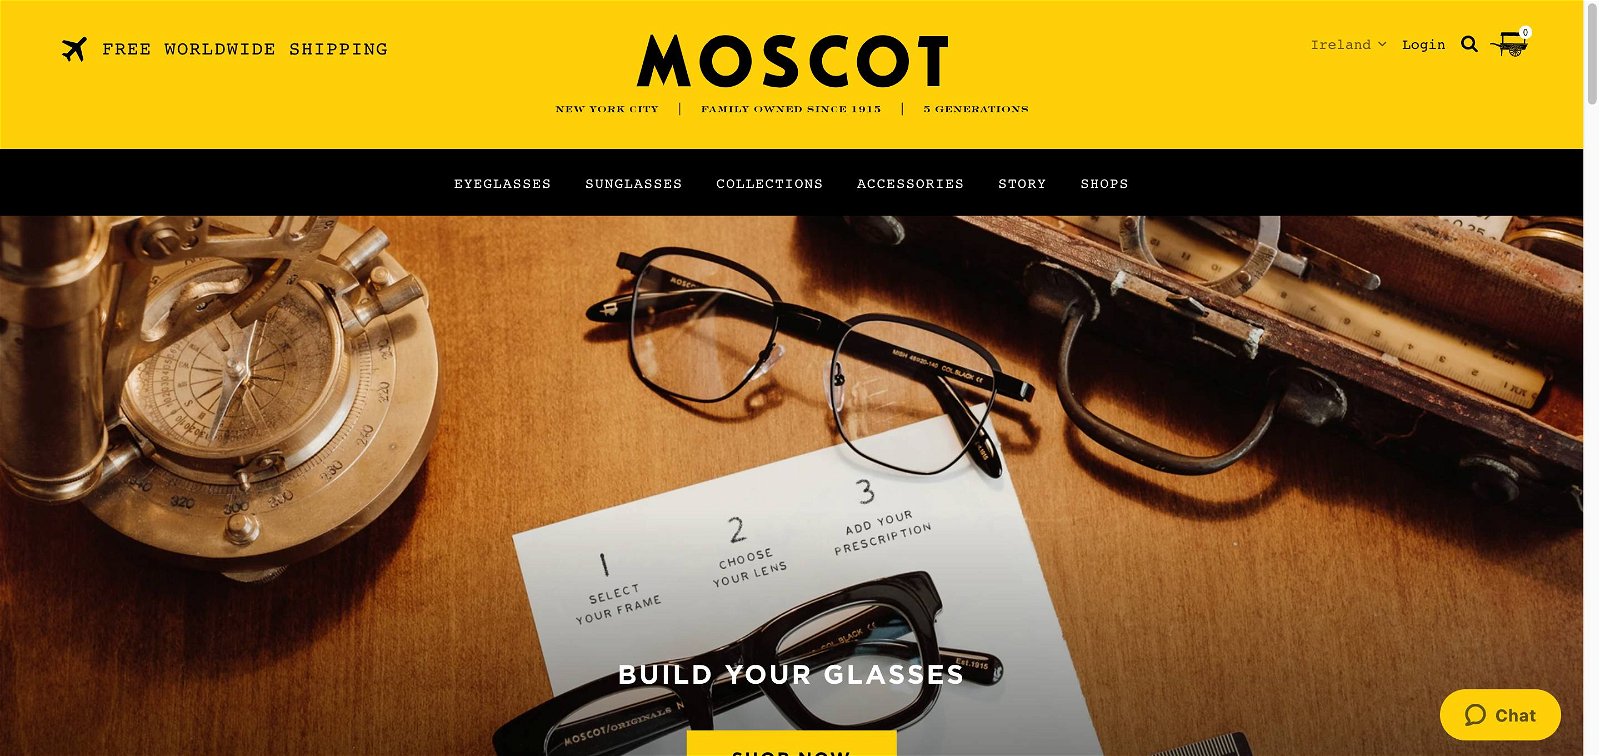 Moscot.com